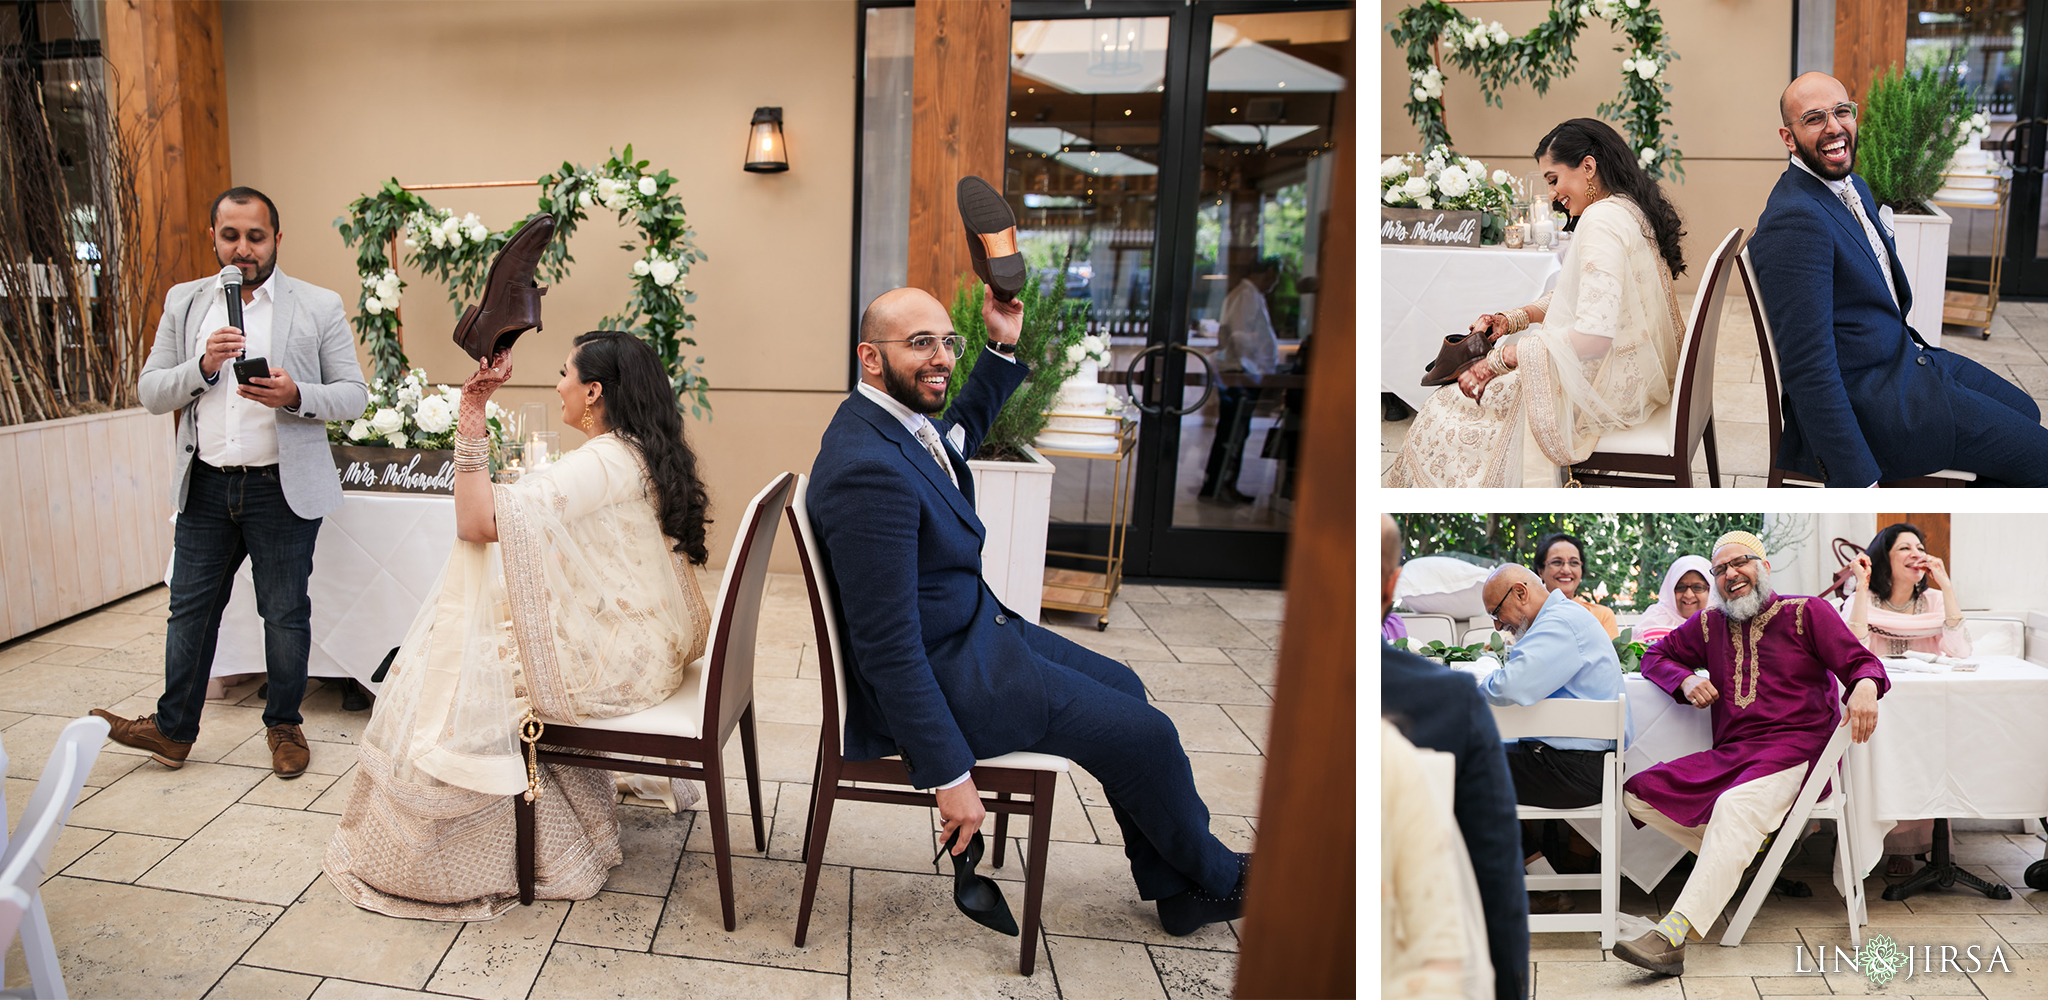 15 Fig and Olive Newport Beach Muslim Wedding Reception